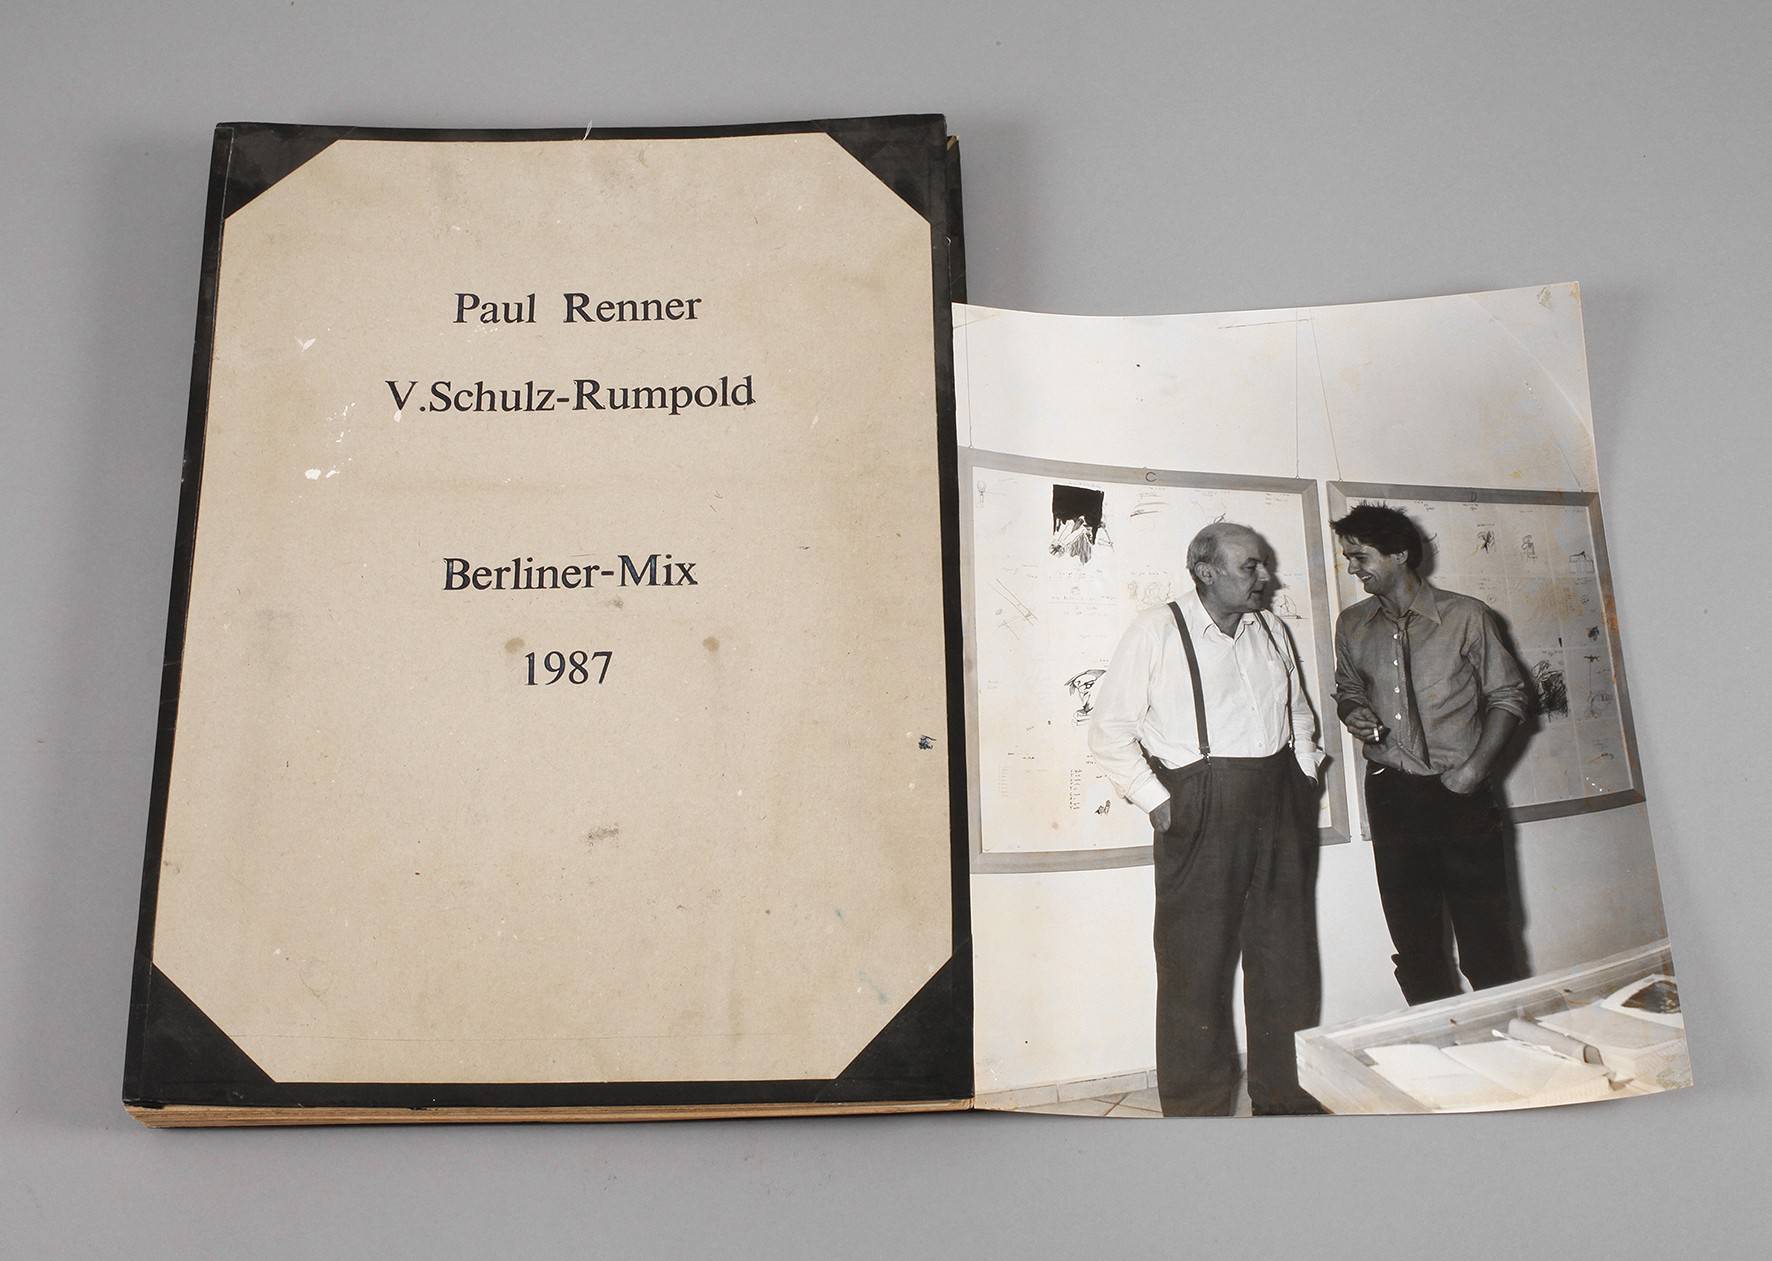 P. Renner und V. Schulz-Rumpold, ”Berliner Mix”